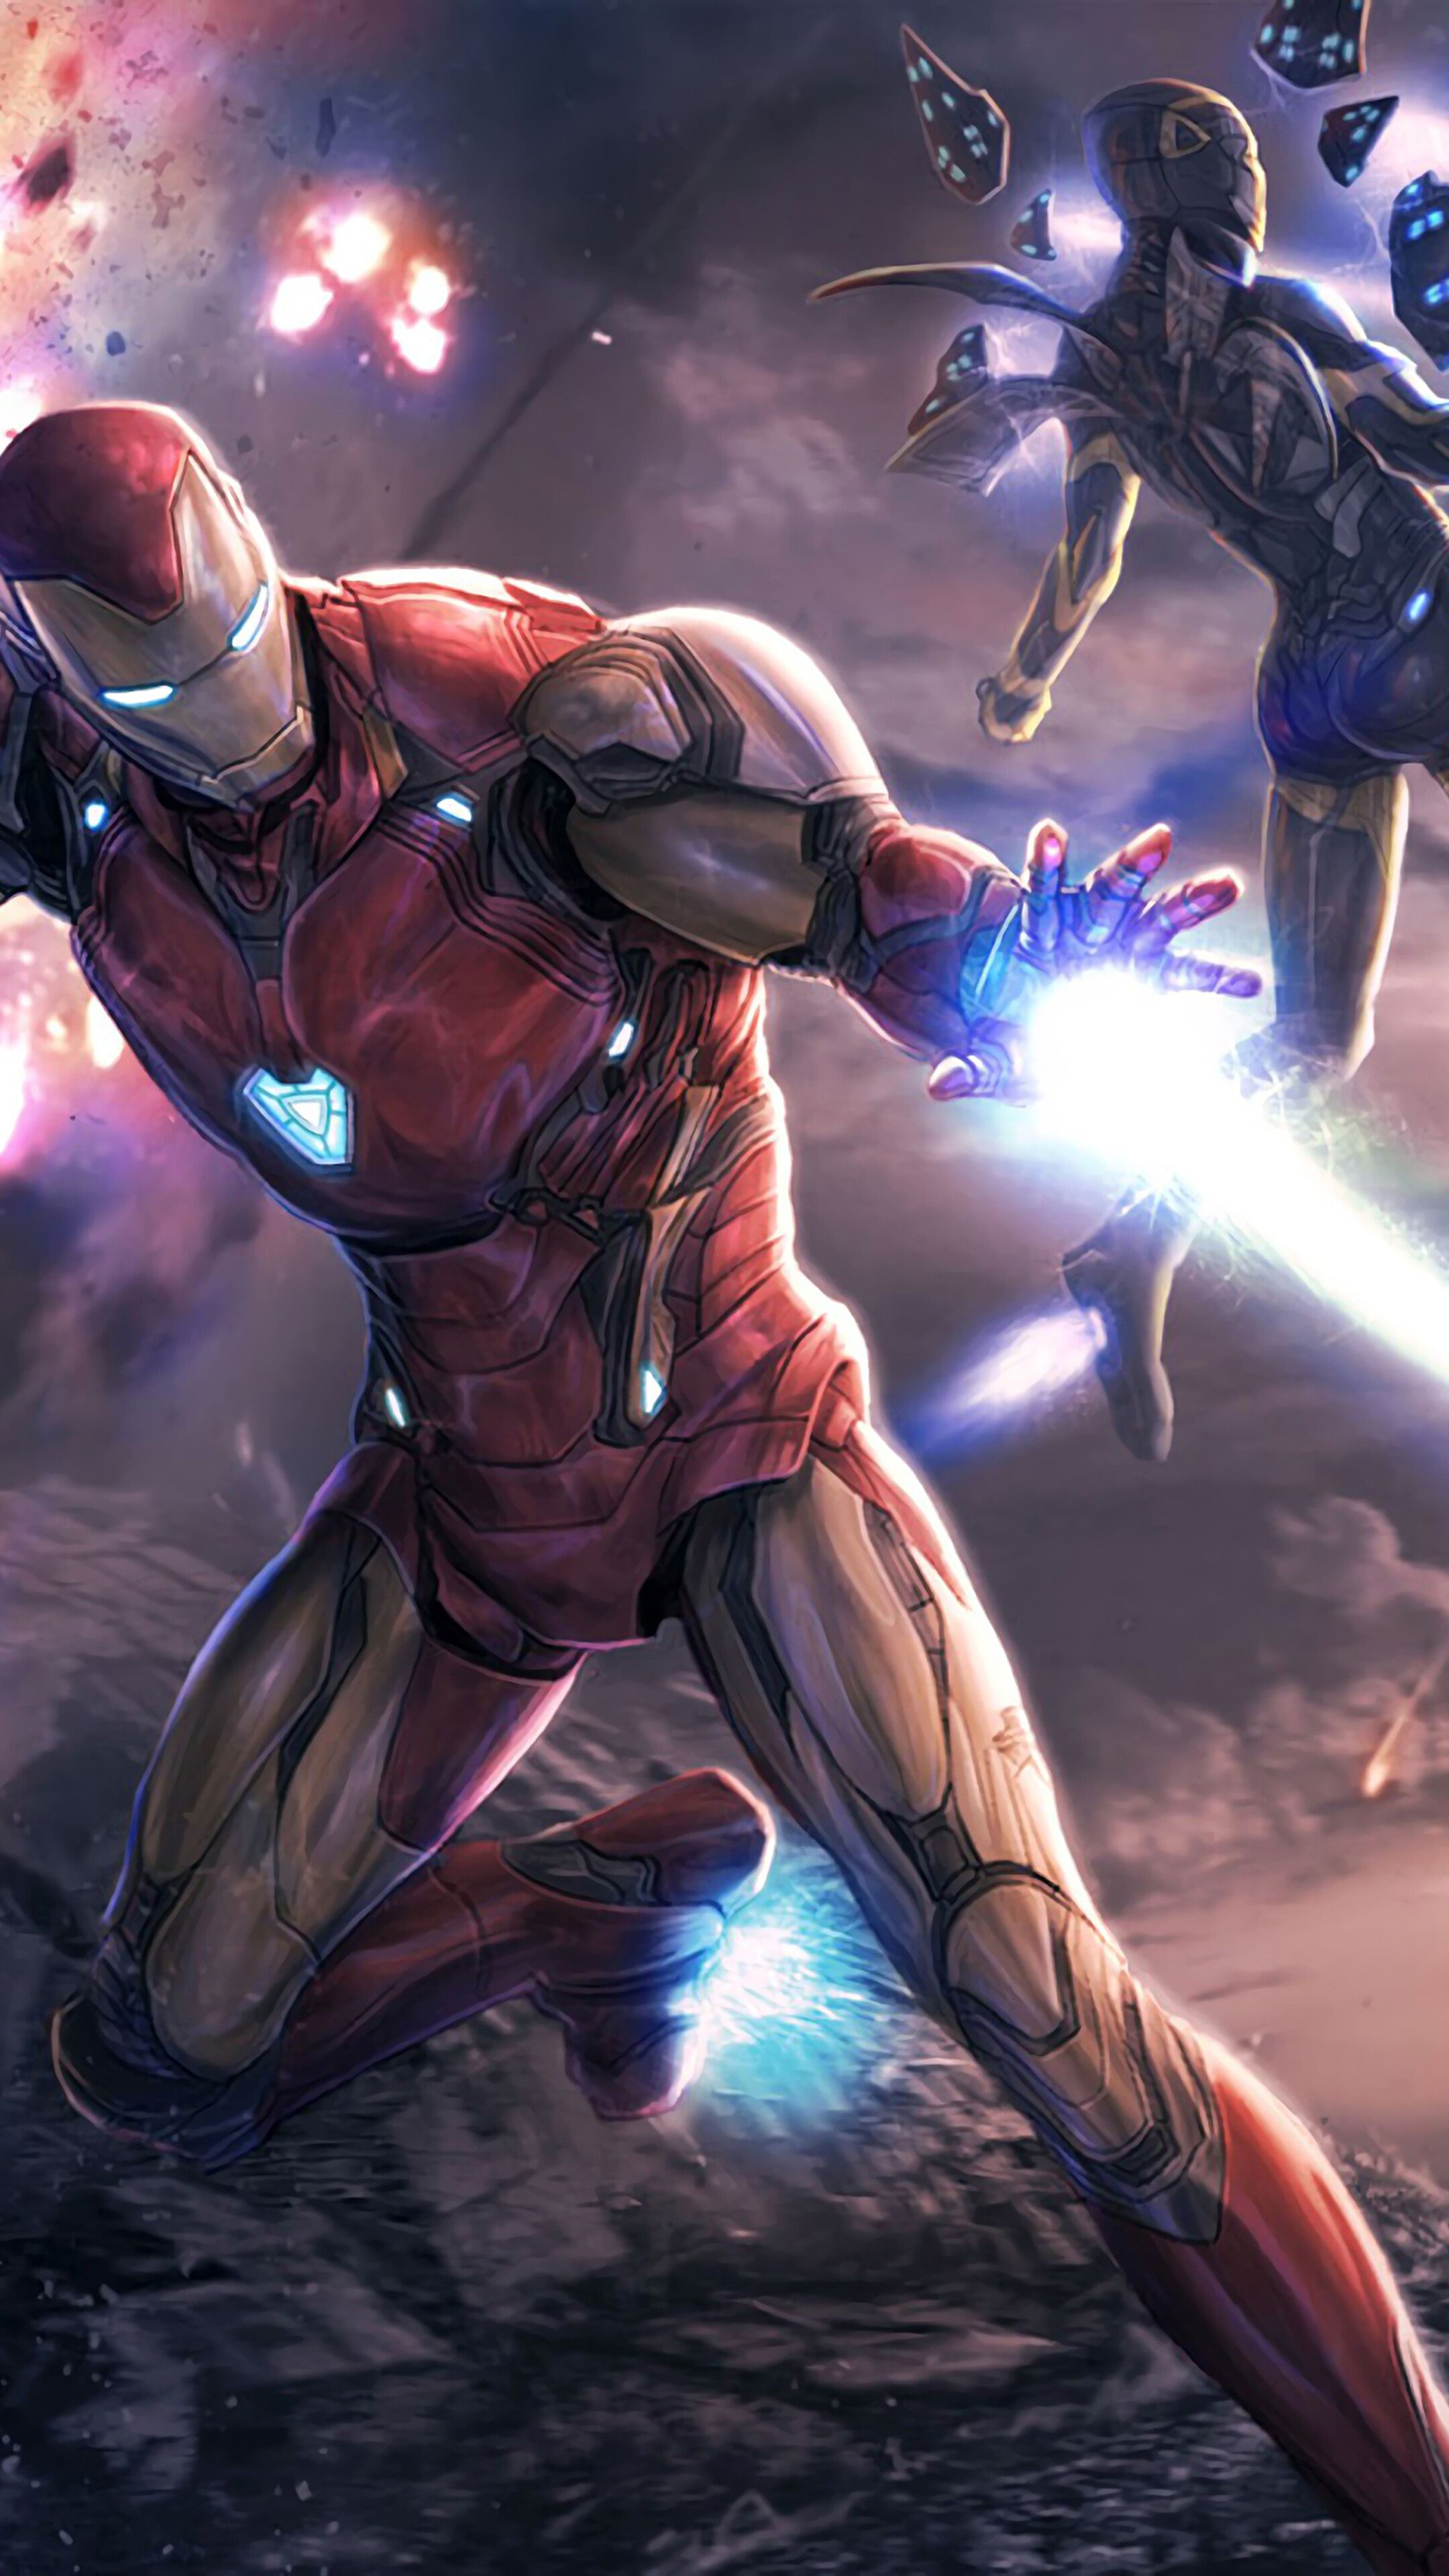 Iron Man, Iron Rescue, Avengers Endgame, 4K iPhone 6s